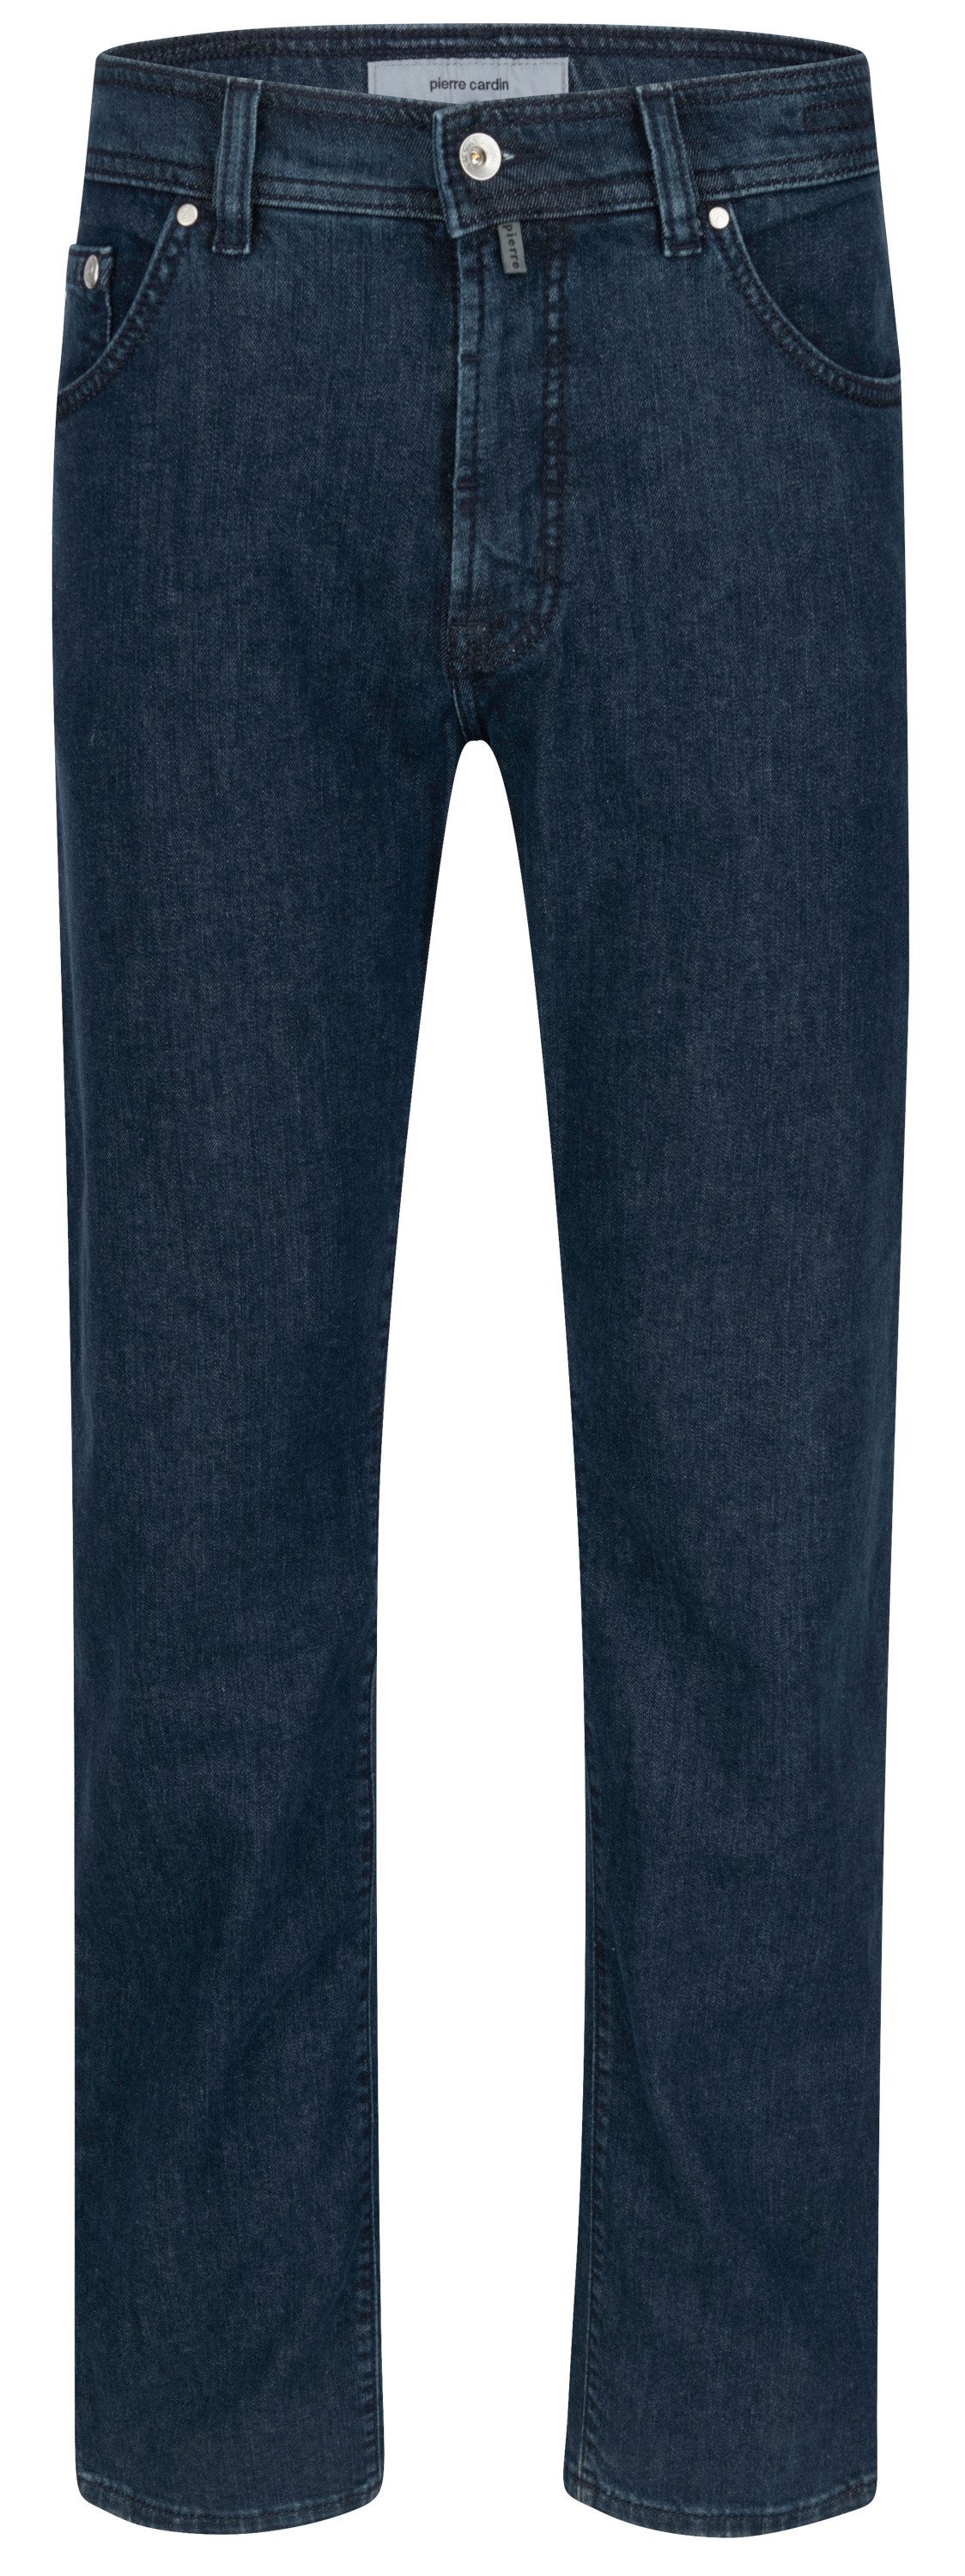 Pierre Cardin 5-Pocket-Jeans PIERRE CARDIN DEAUVILLE blue stonewash 31960 8123.6821